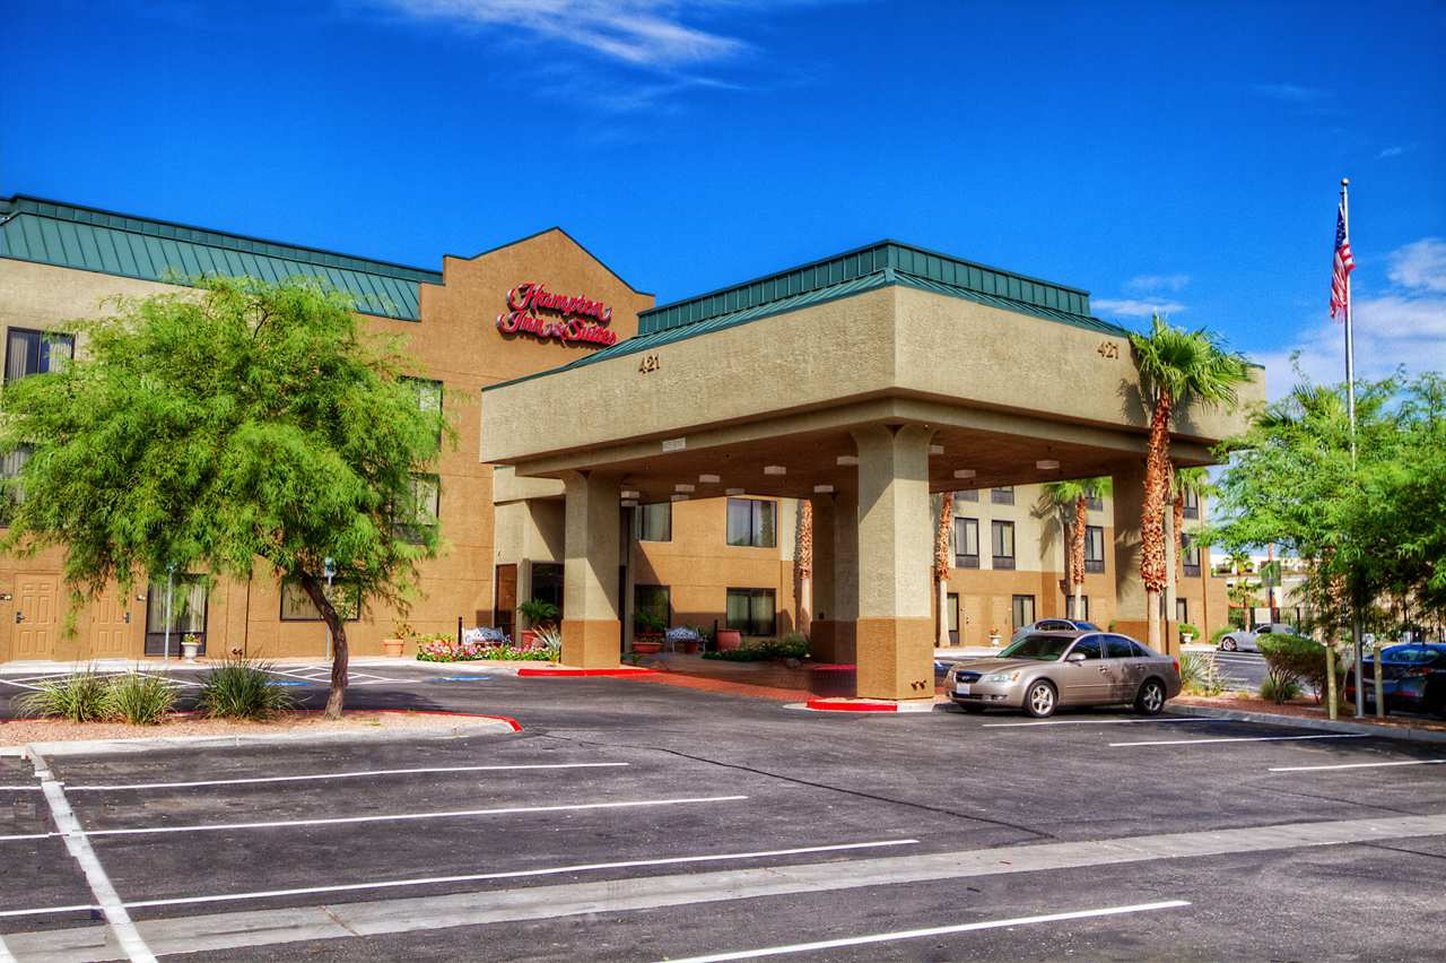 Hampton Inn & Suites Las Vegas-Henderson